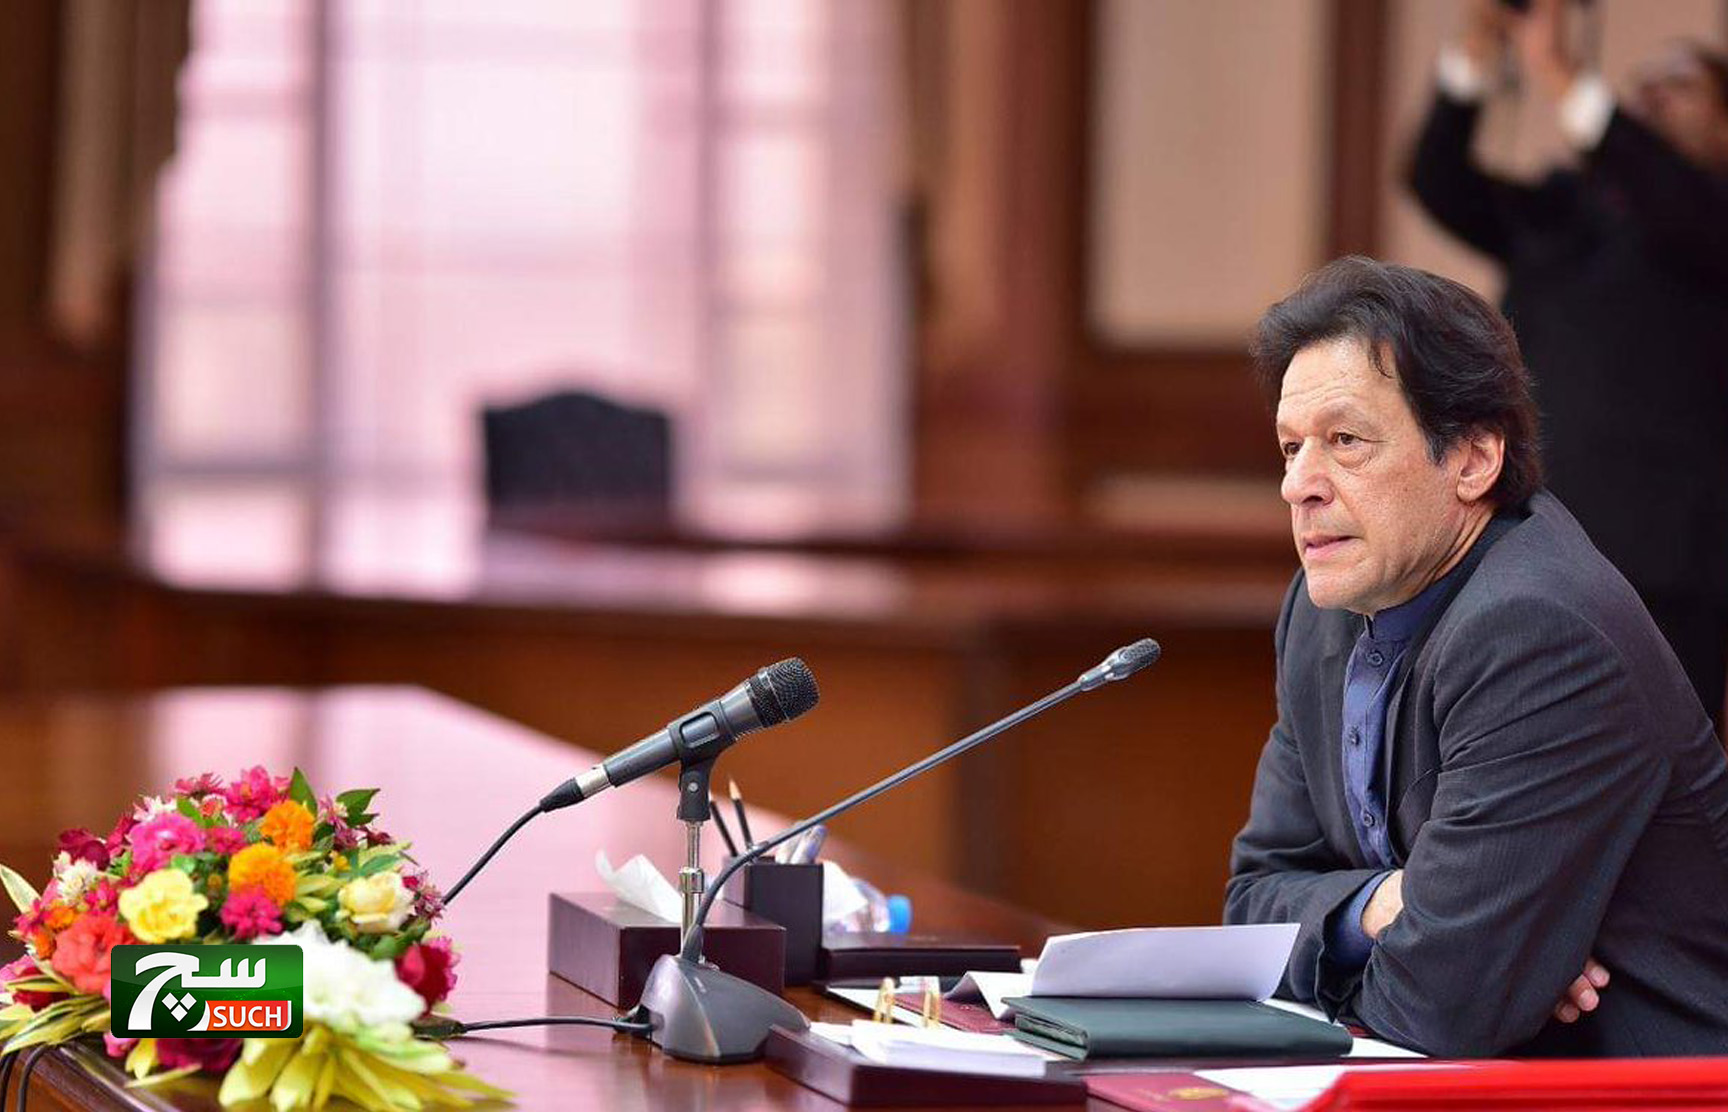 رئيس الوزراء الباكستاني يحث الجالية التجارية على لعب الدور الفعال لتحقيق الاستقرار الاقتصادي في البلاد